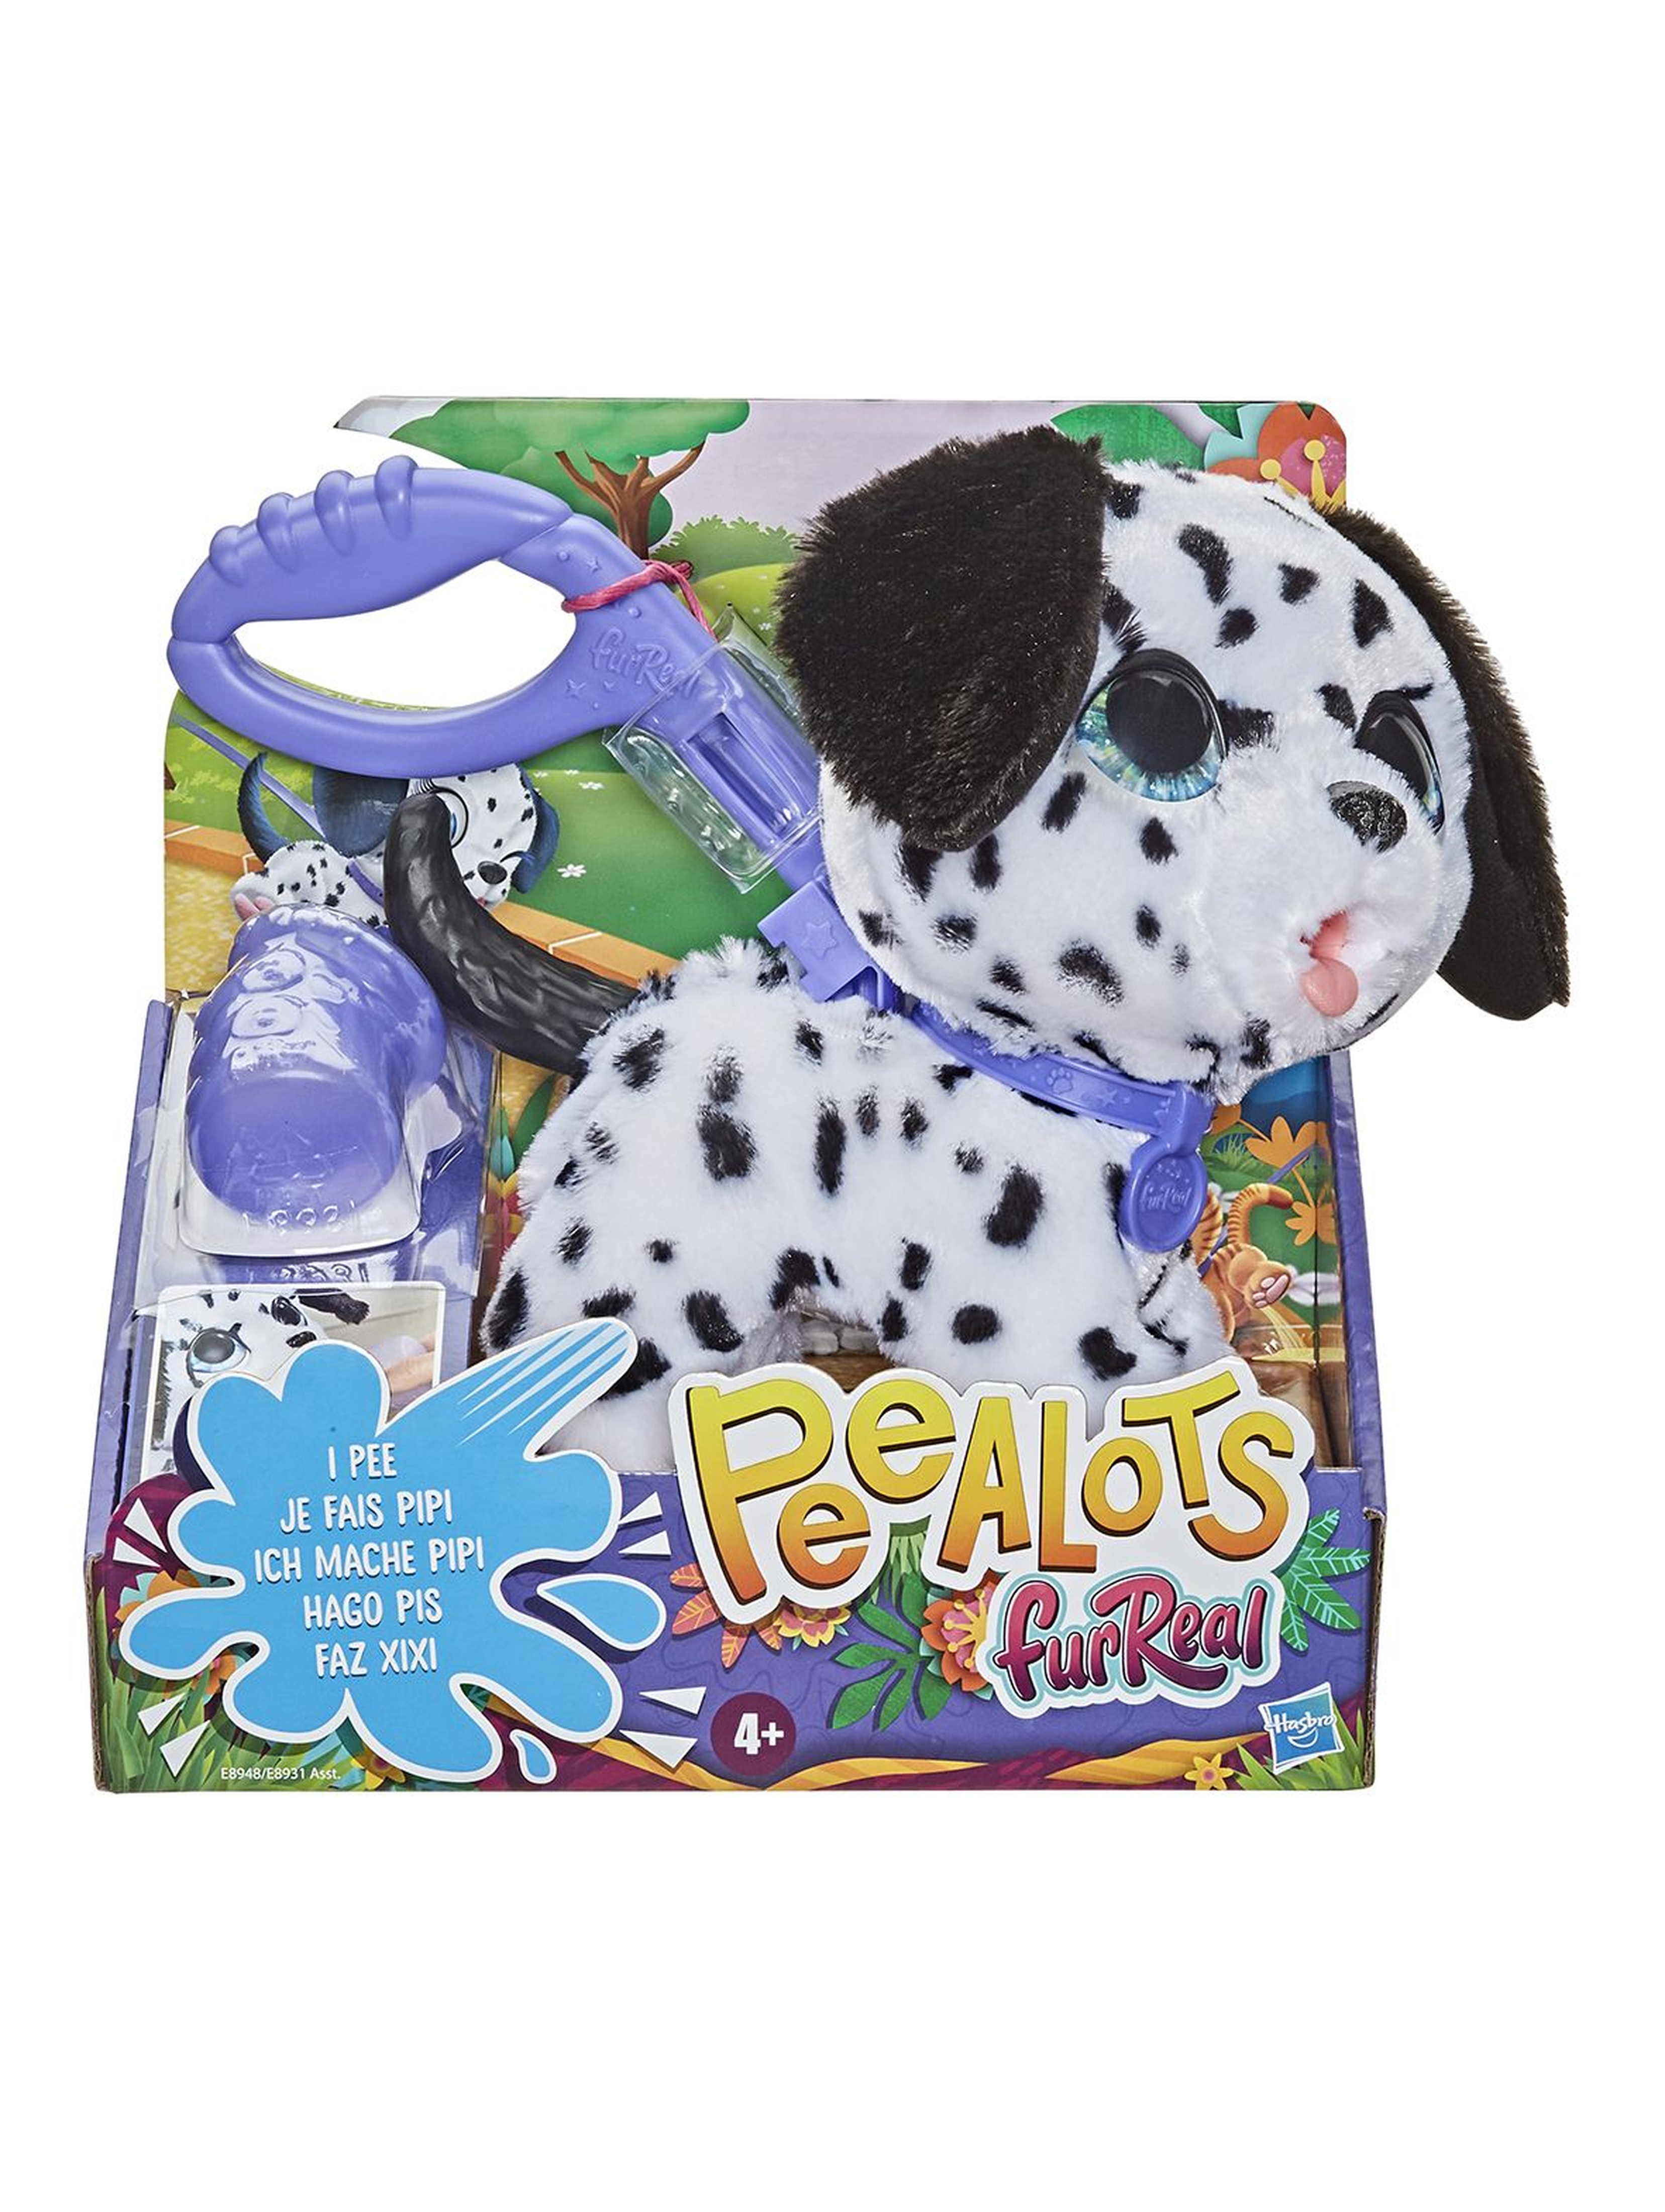 Furreal Peealots pies - zwierzaki na smyczy 4+